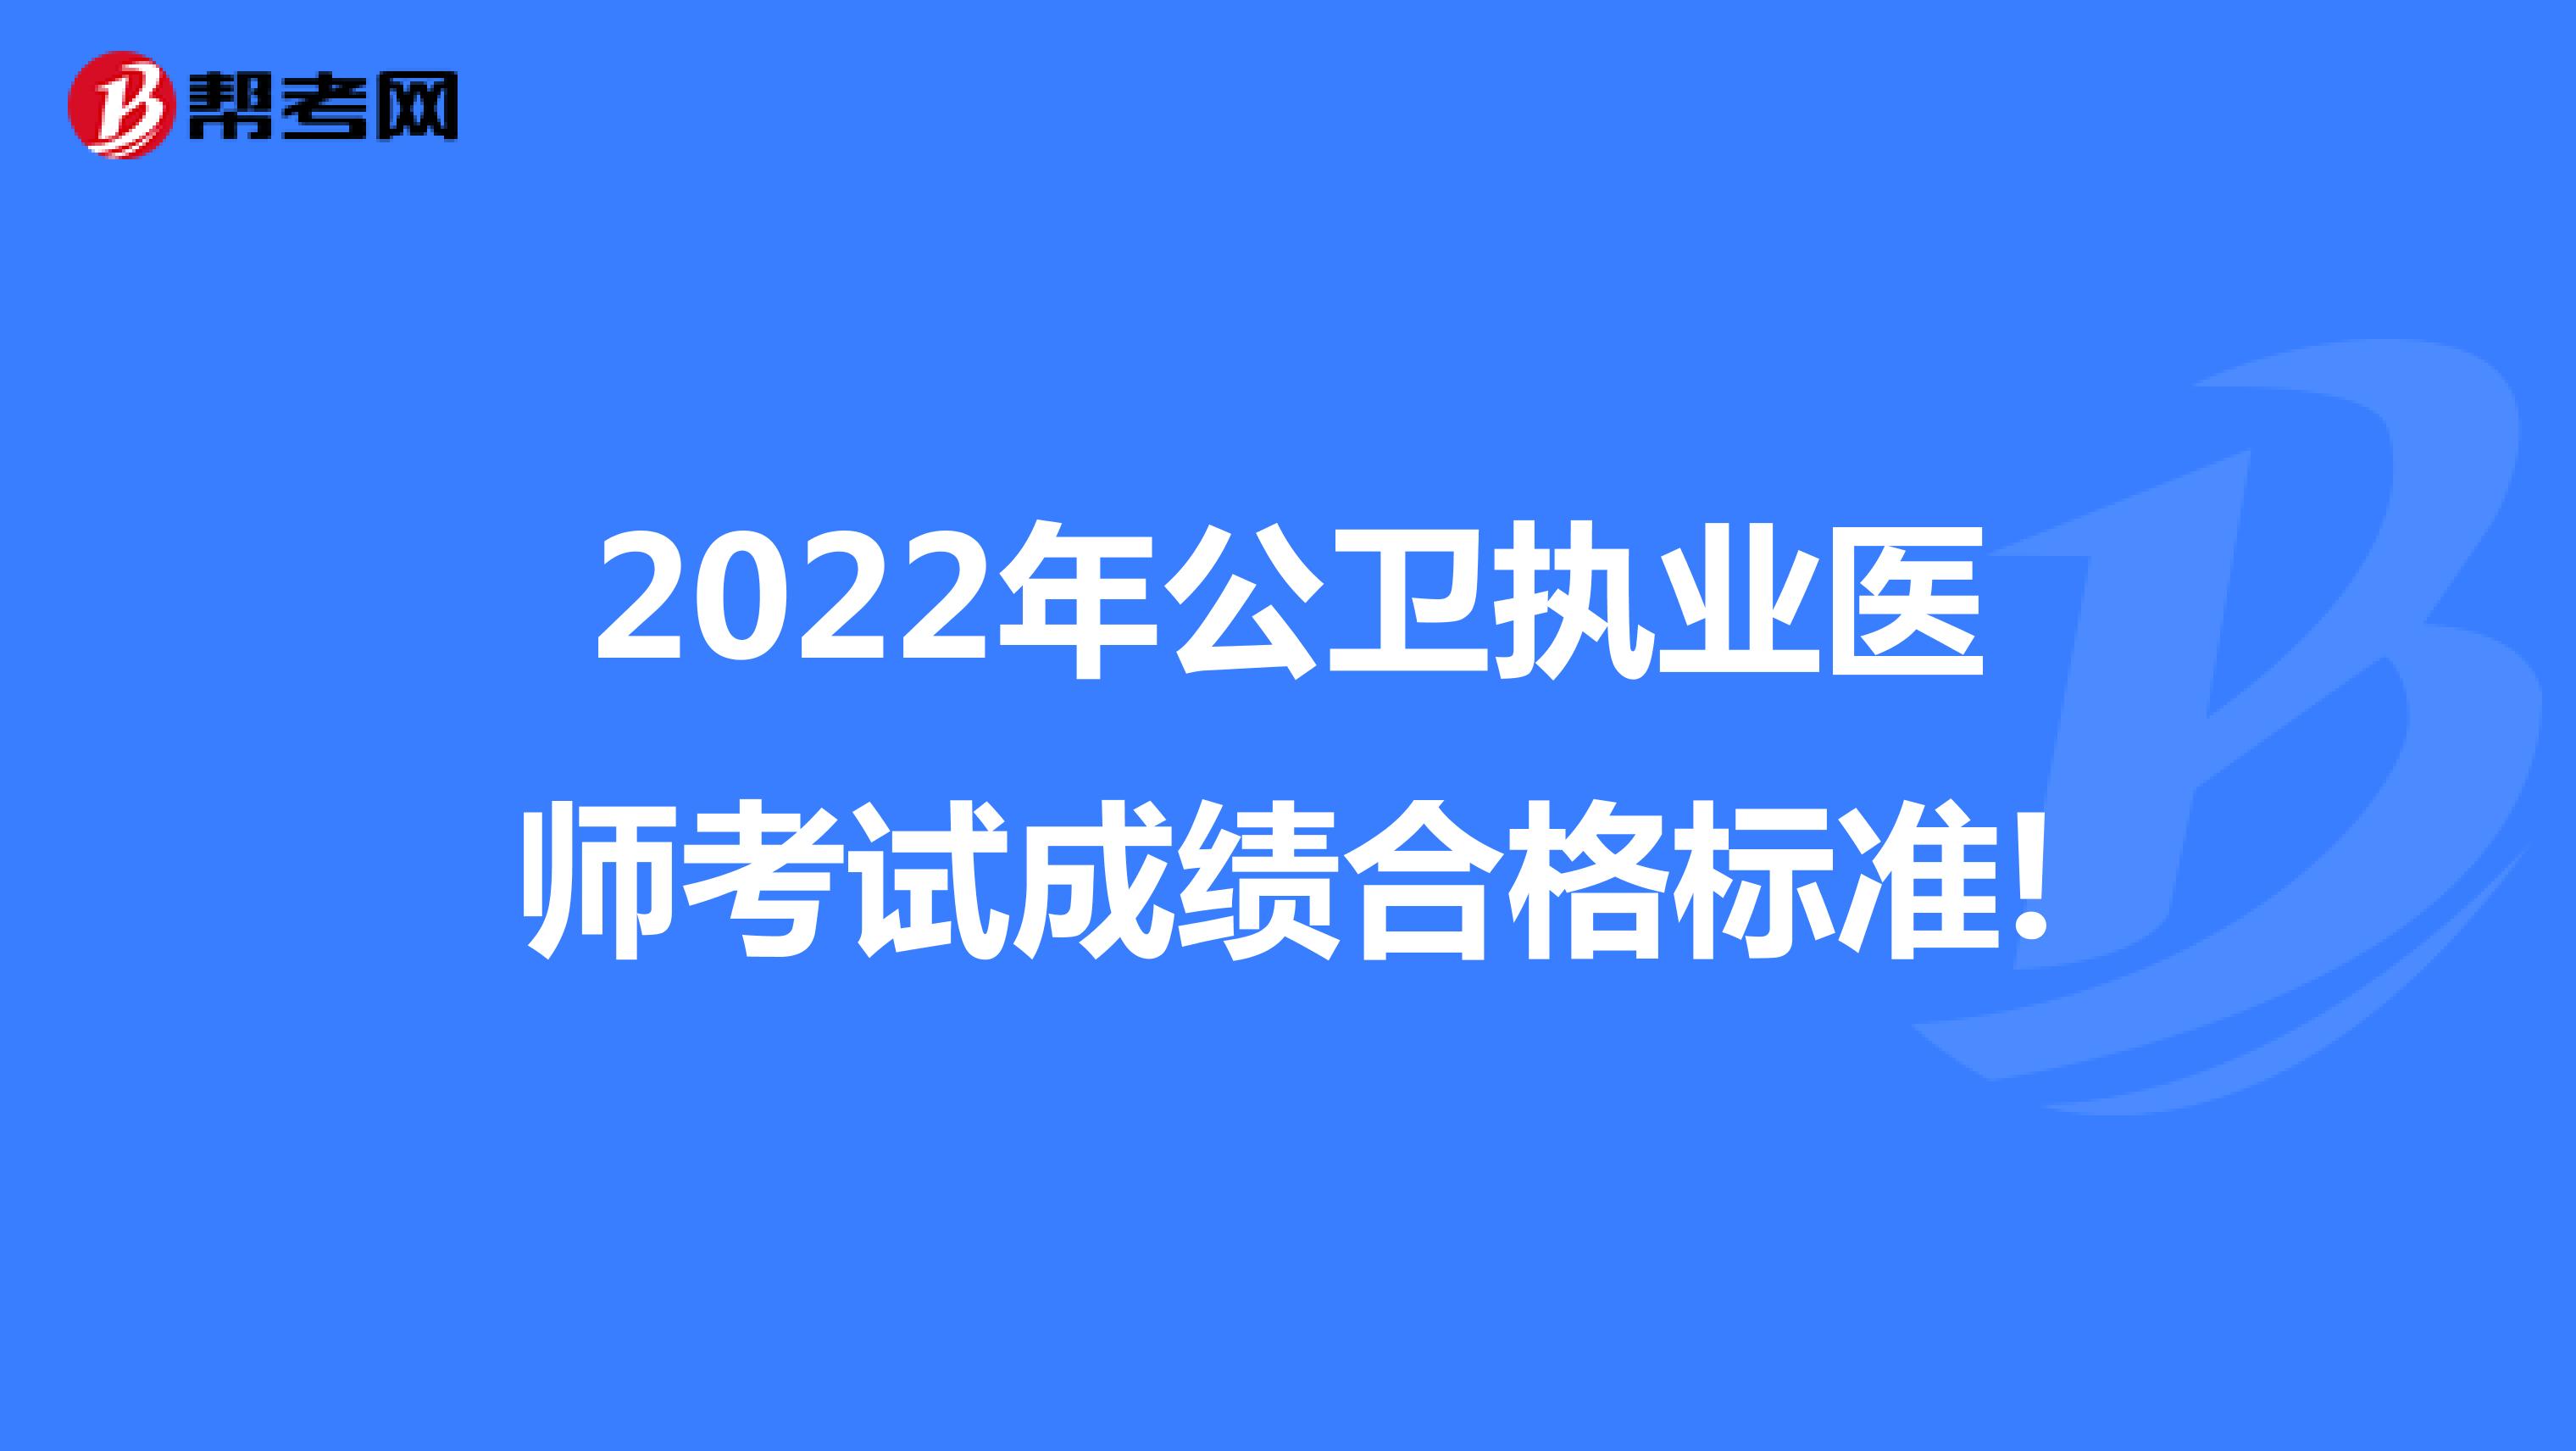 2022年公卫执业医师考试成绩合格标准!